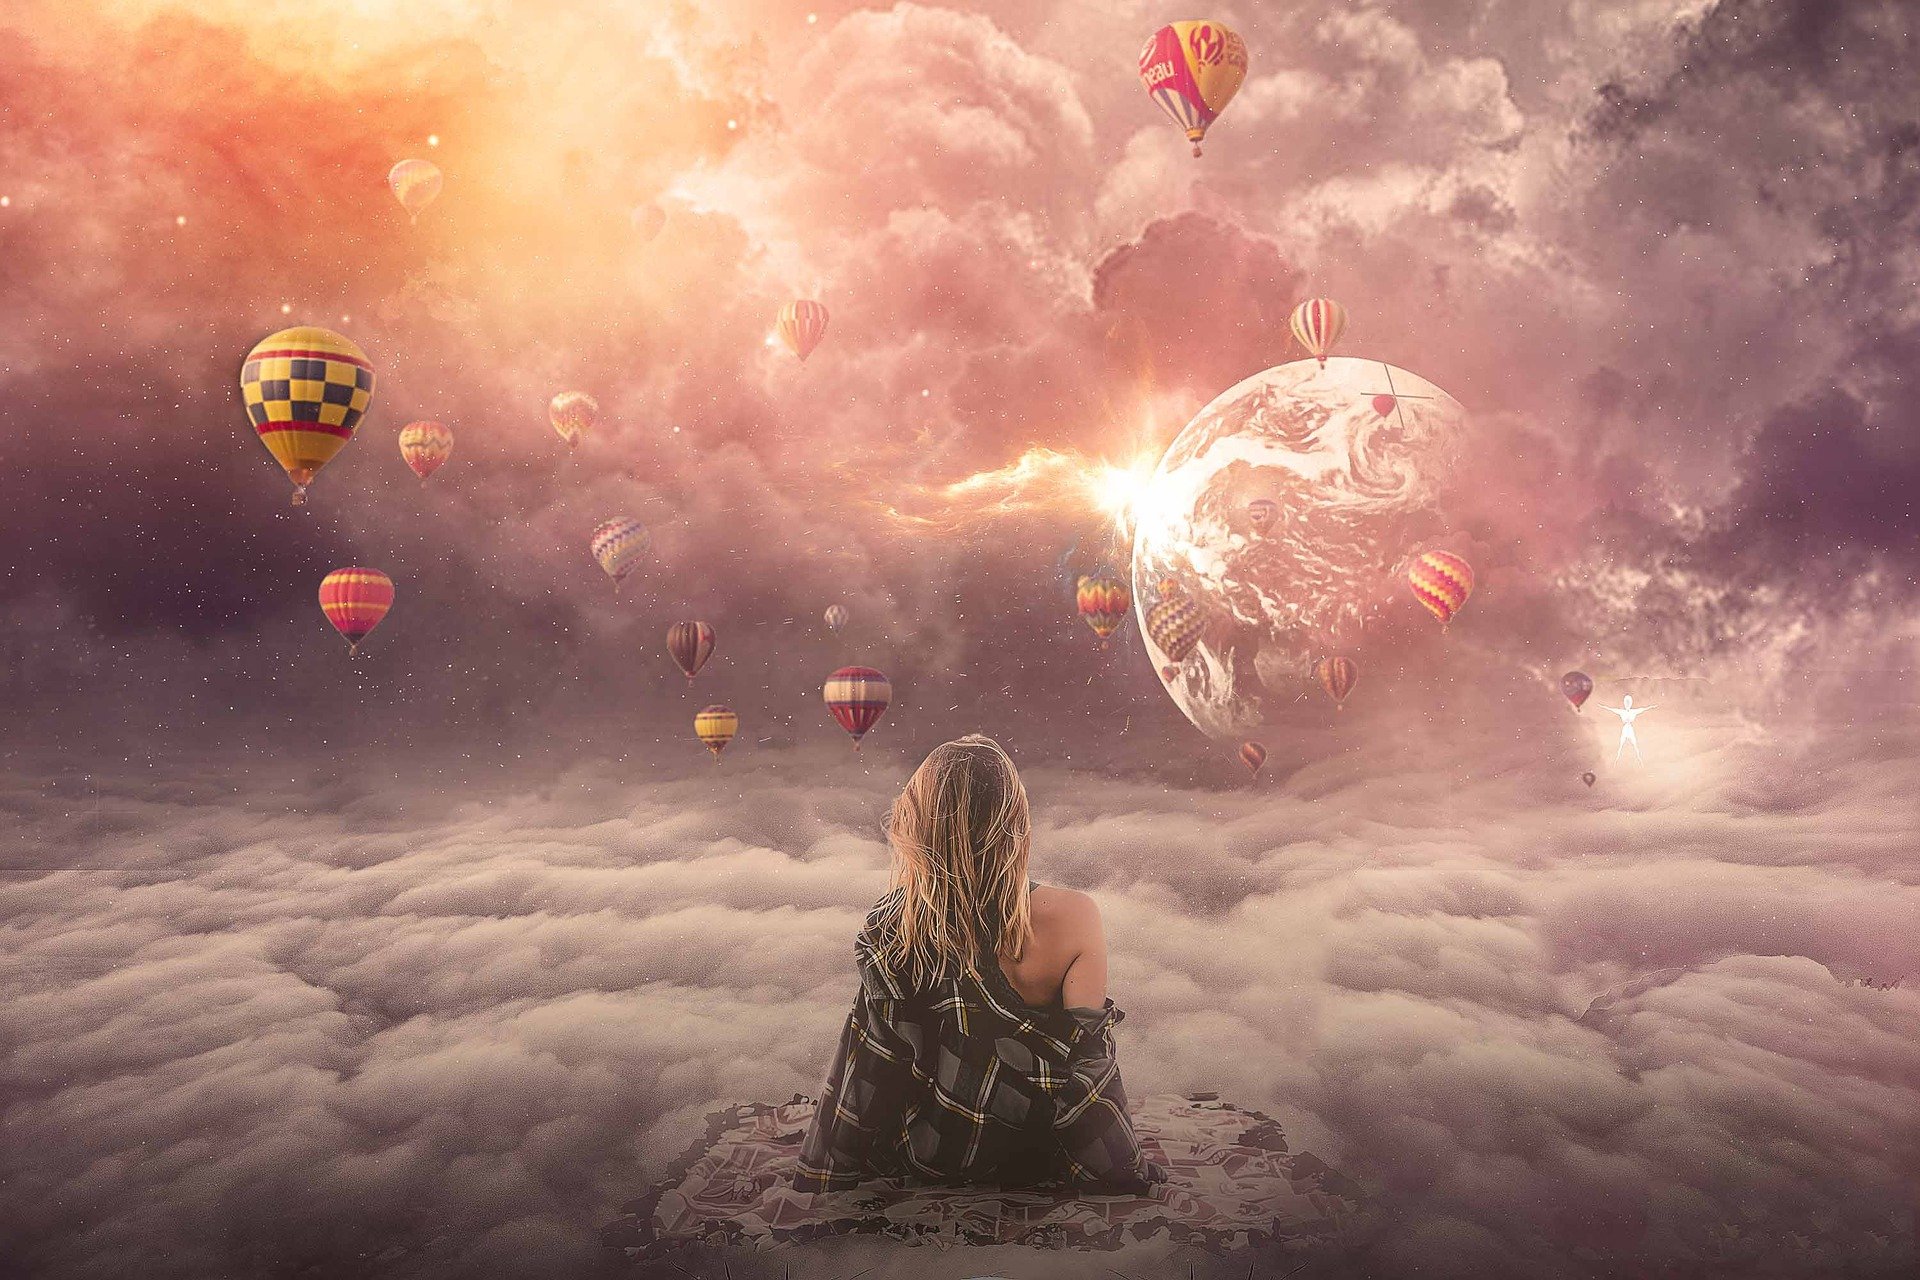 波動が高い女性が、気球や地球が見える異世界のような空間を眺めて座っている画像